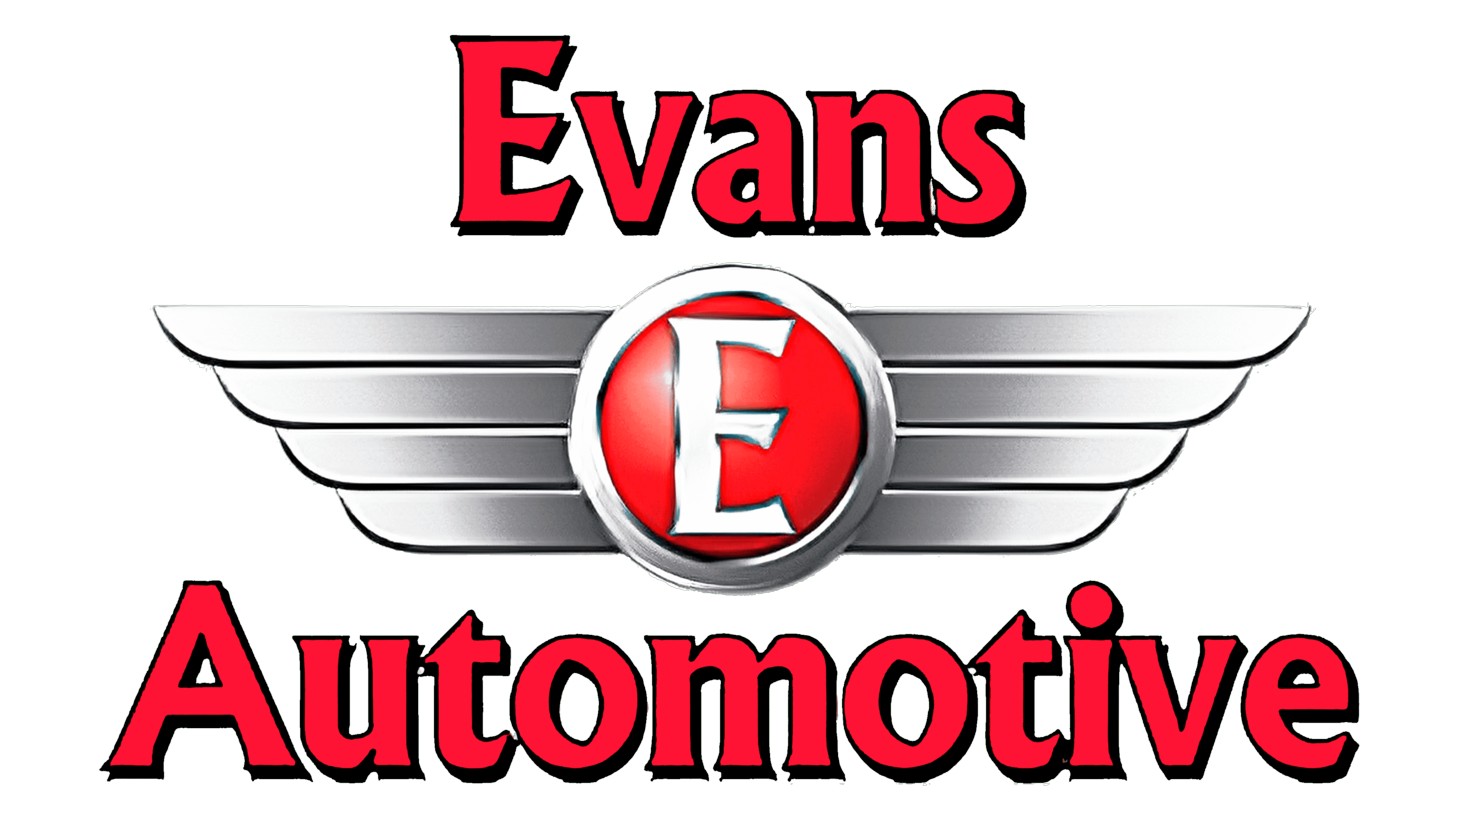 Evans automobiles sign